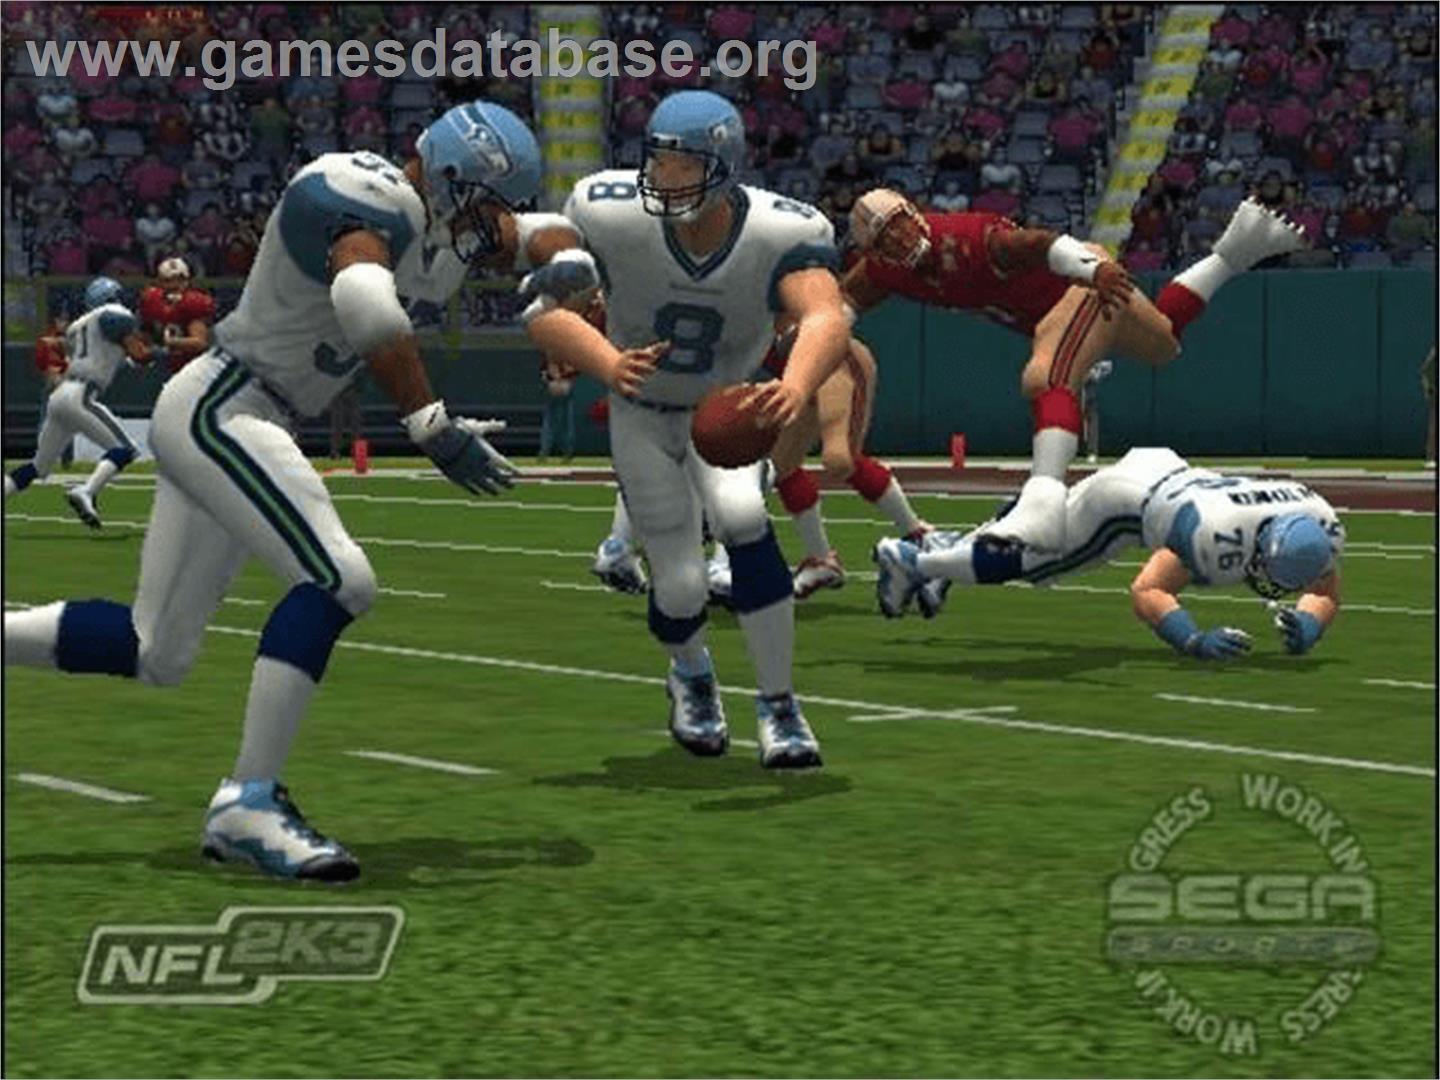 NFL 2K3 - Microsoft Xbox - Artwork - In Game